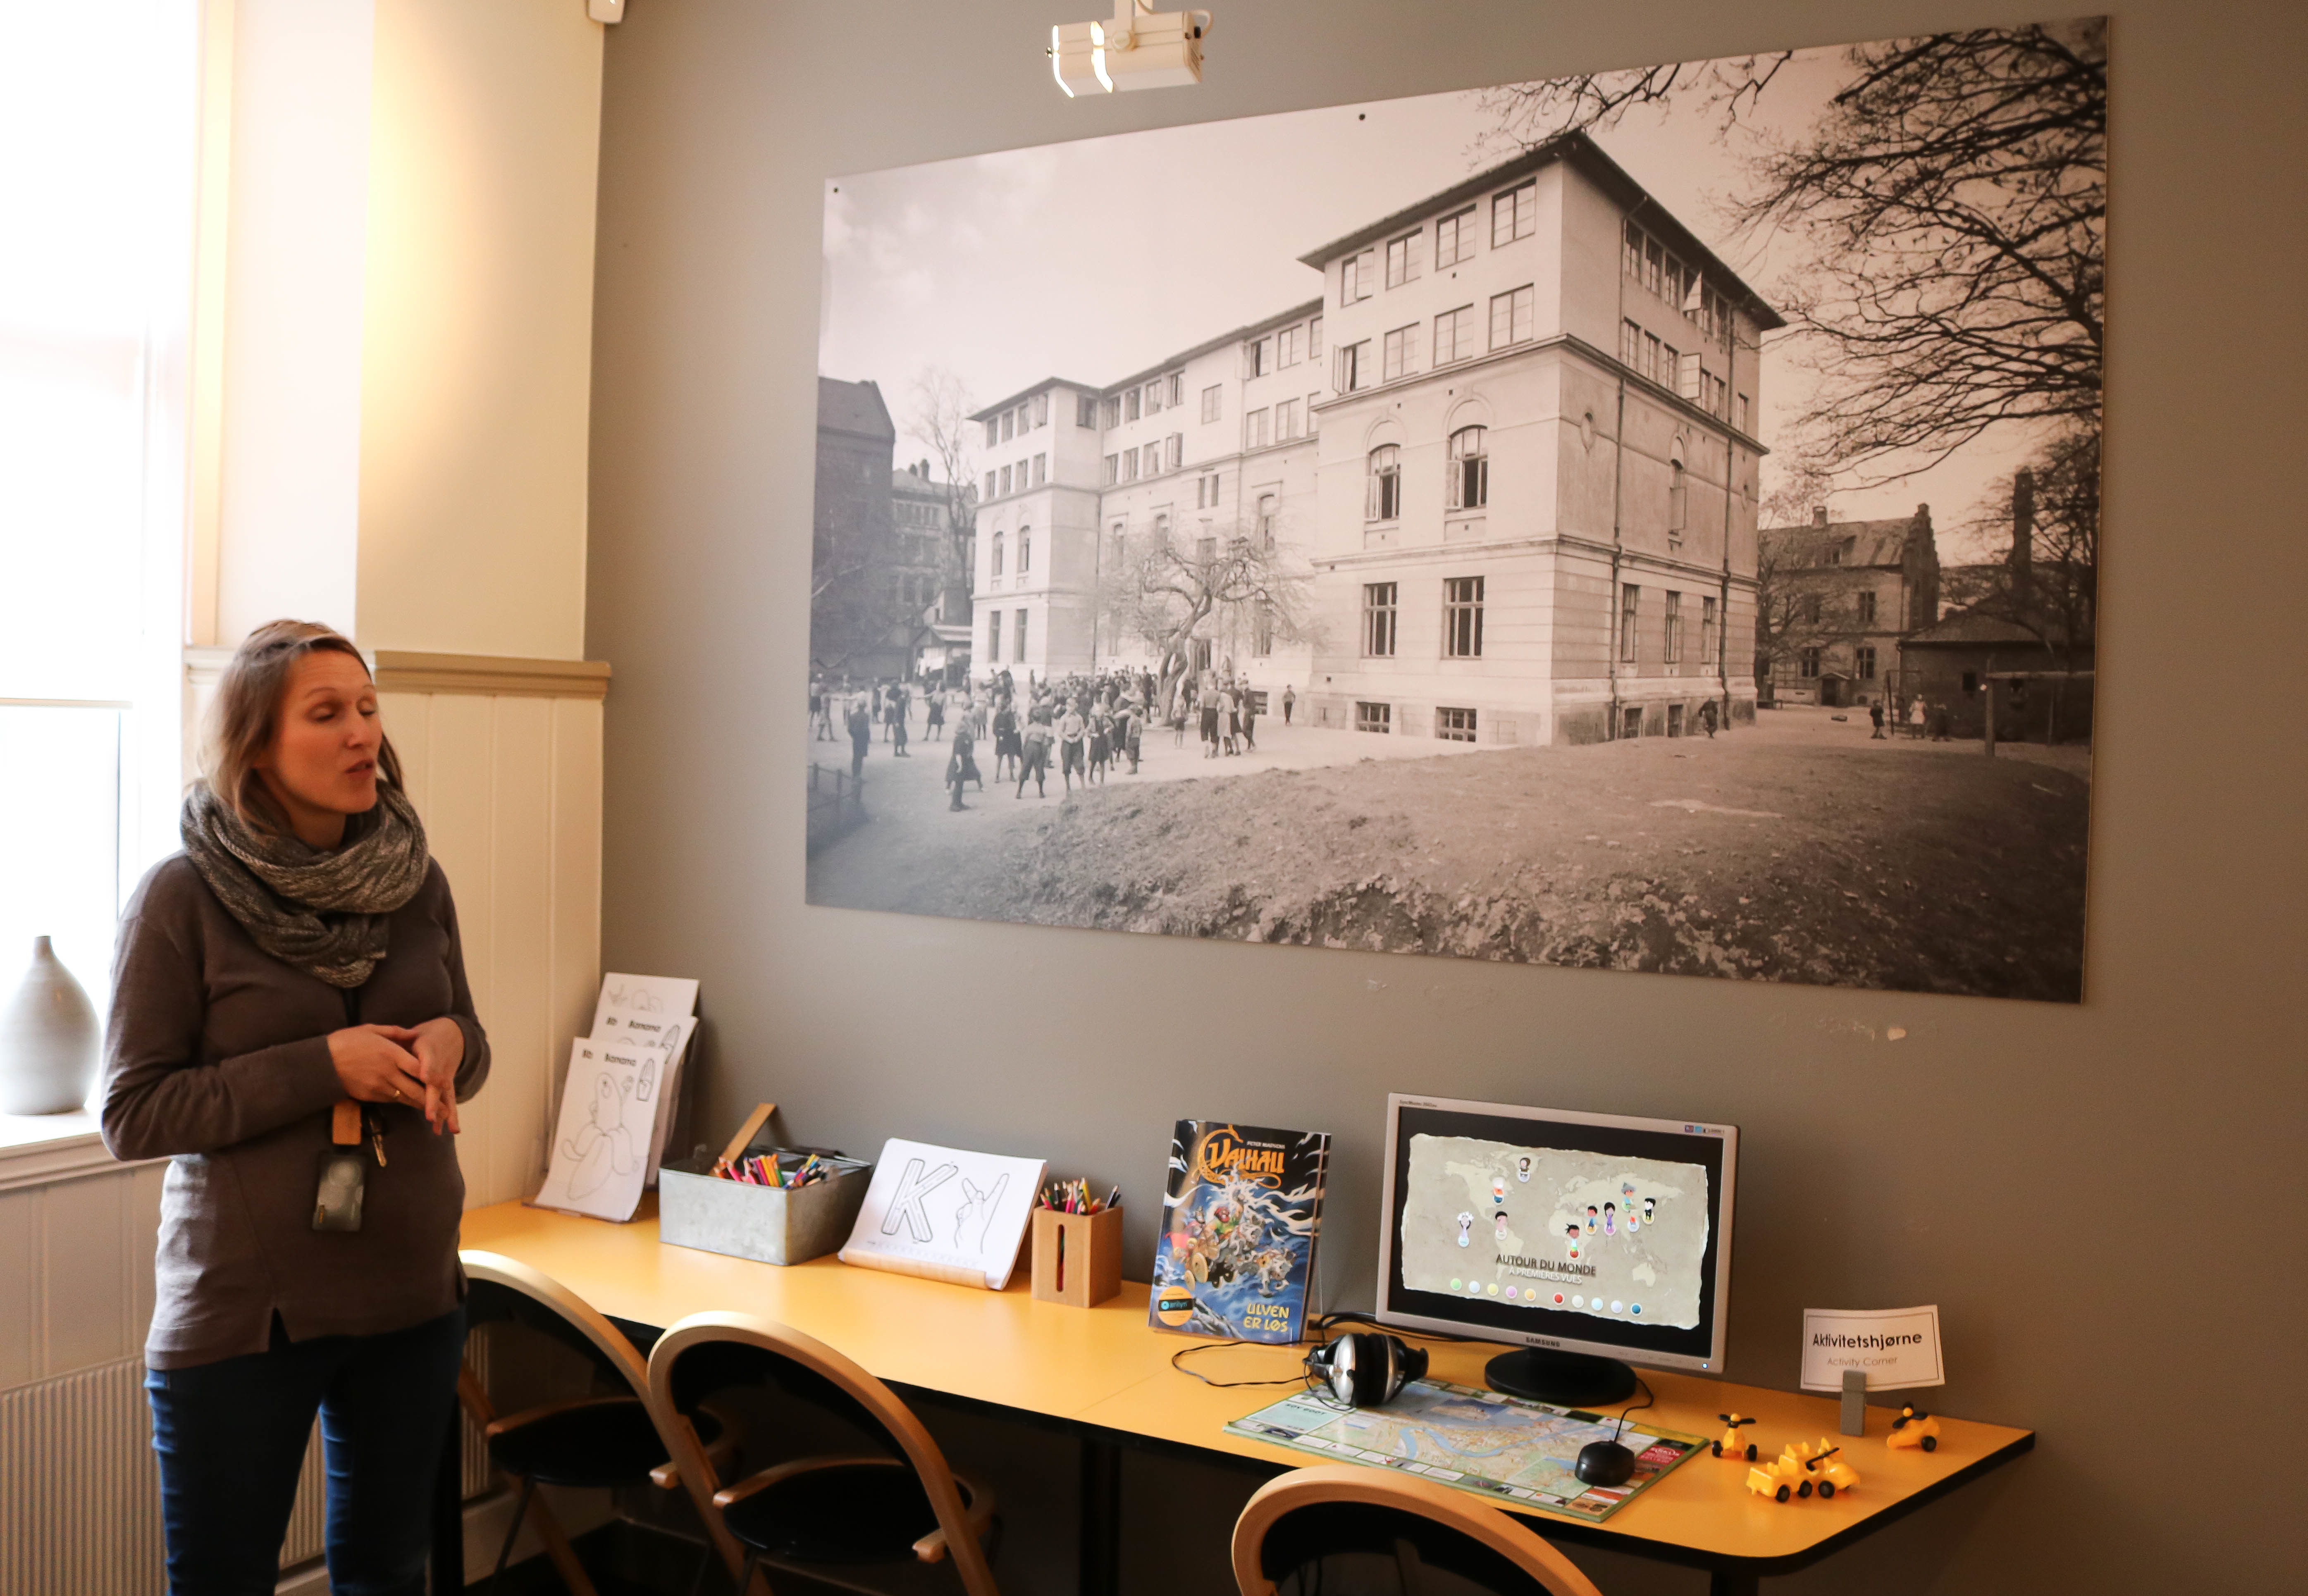  Kvinne forteller om eldre bygning, avbildet på et stort sort-hvitt fotografi, som henger på vegg.